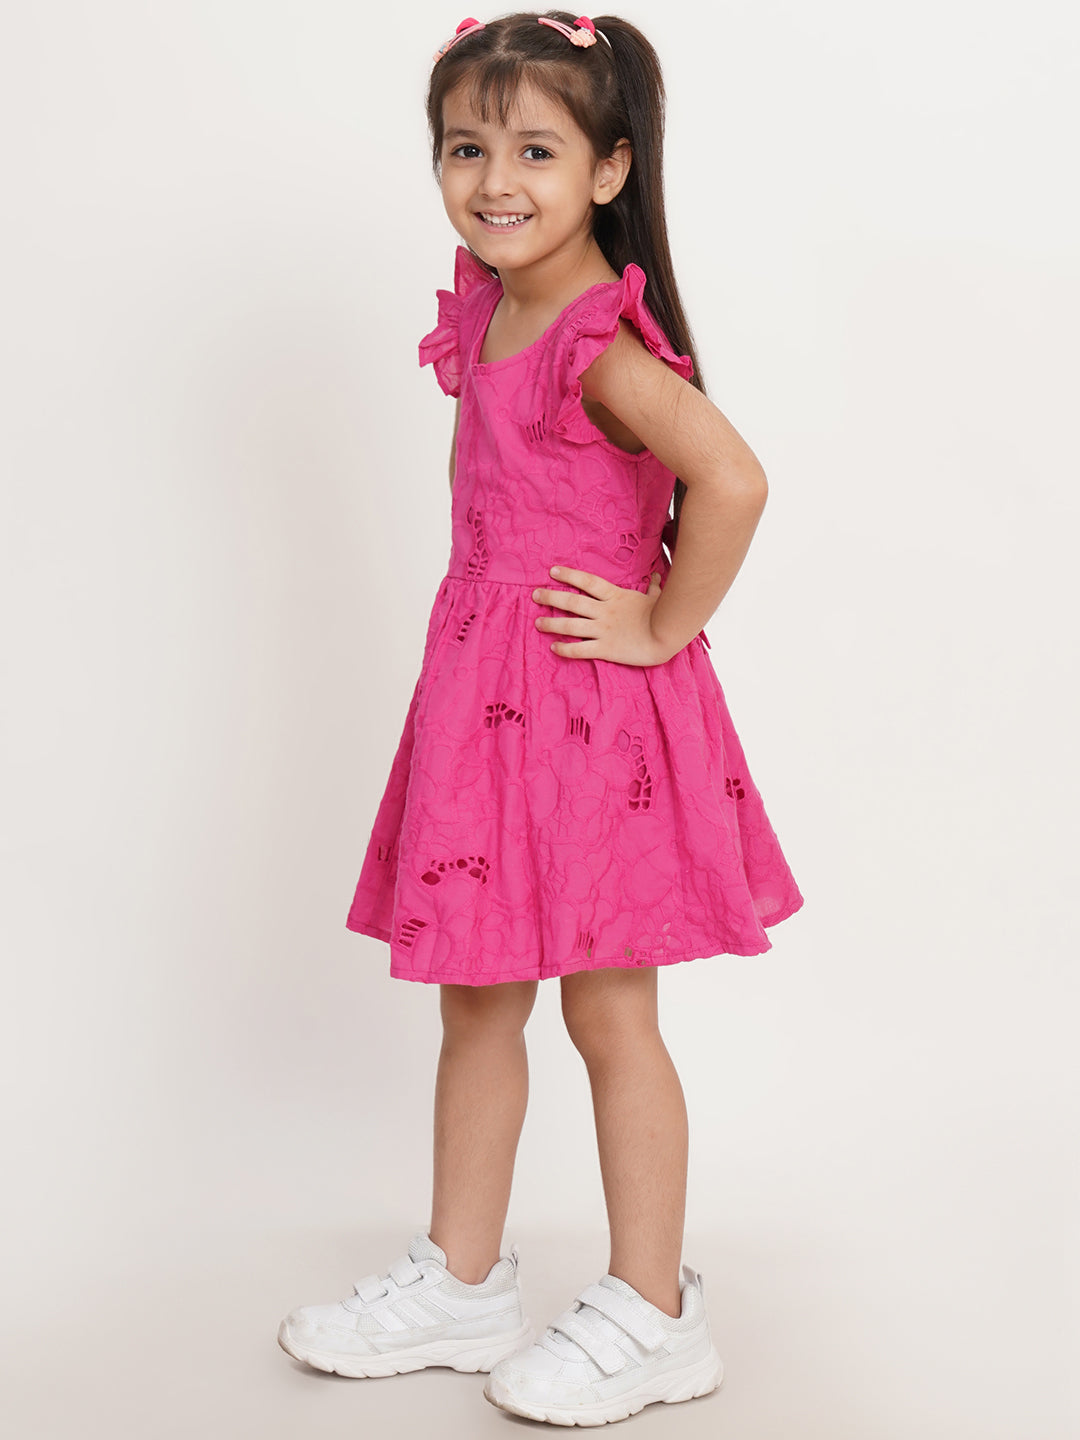 CREATIVE KID'S Girl Pink Cotton Schiffli Fit & Flare Dress